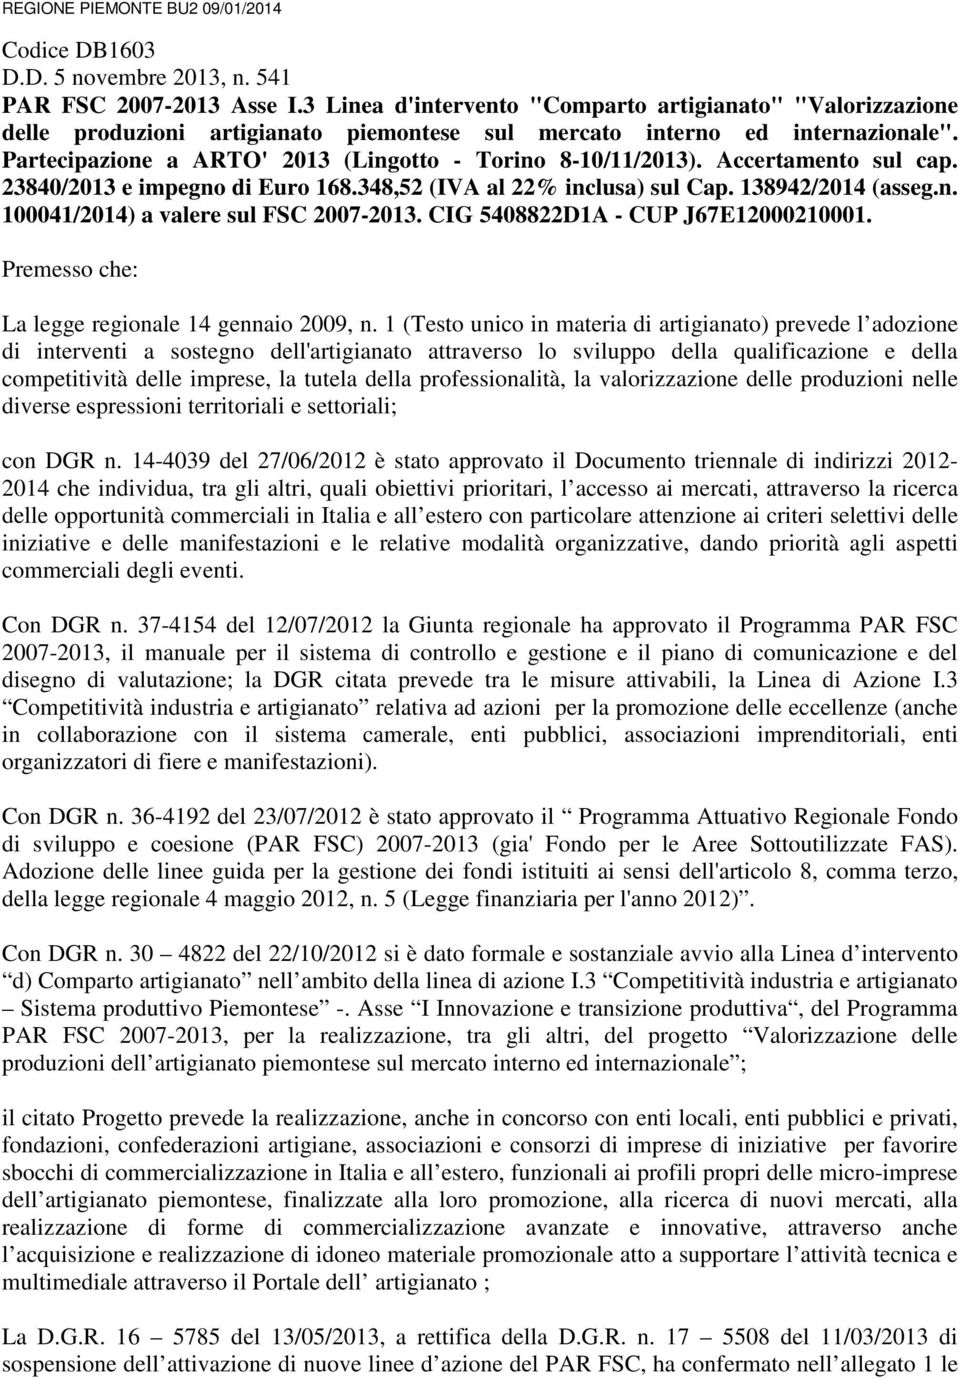 Partecipazione a ARTO' 2013 (Lingotto - Torino 8-10/11/2013). Accertamento sul cap. 23840/2013 e impegno di Euro 168.348,52 (IVA al 22% inclusa) sul Cap. 138942/2014 (asseg.n. 100041/2014) a valere sul FSC 2007-2013.